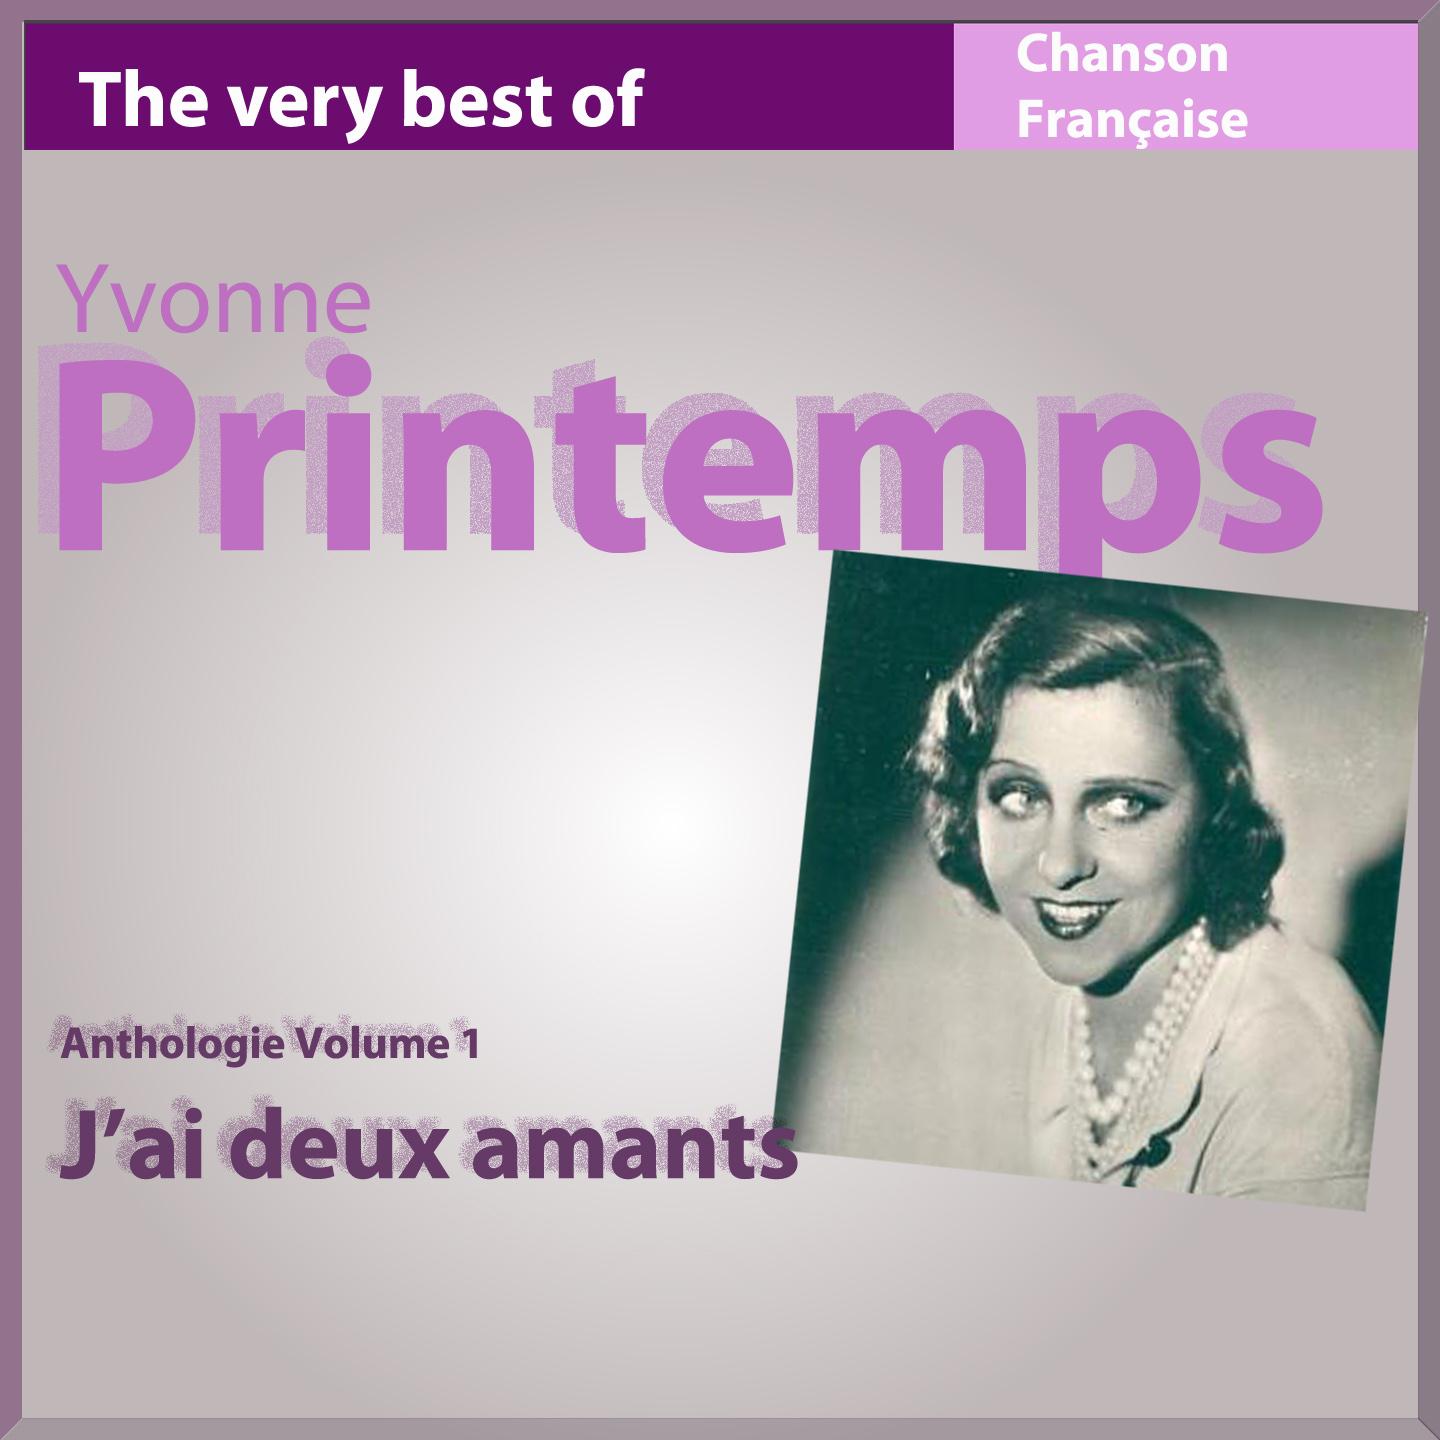 The Very Best of Yvonne Printemps: J'ai deux amants